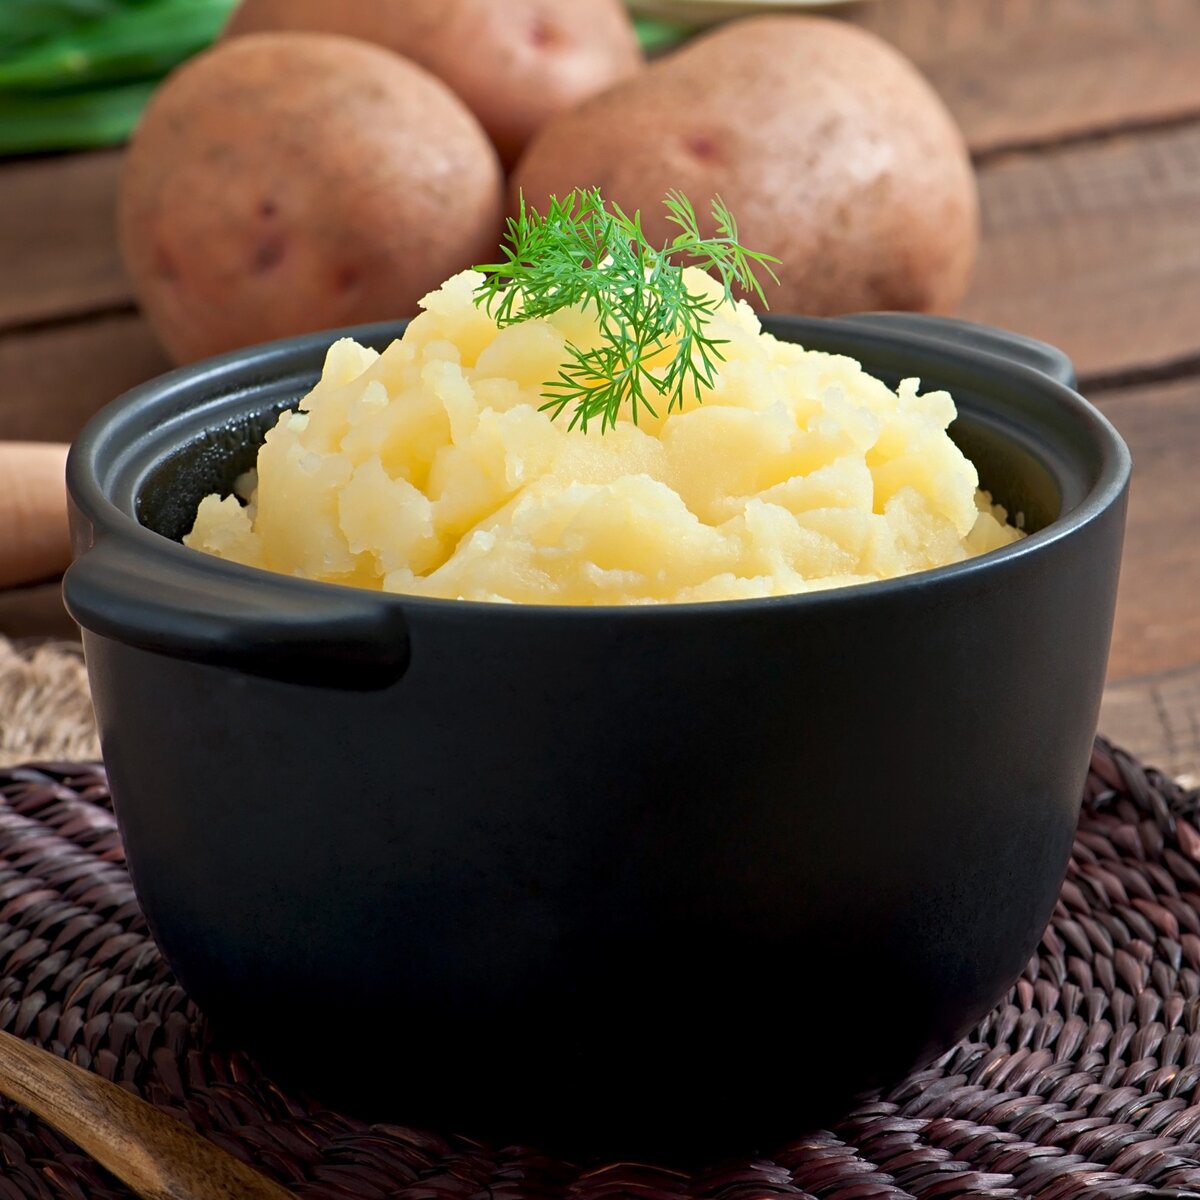 Картофельное пюре - распространенный вариант гарнира, который нравится как взрослым, так и детям. Рецепт его прост и незатейлив. Первое, что необходимо сделать - тщательно очистить картошку.